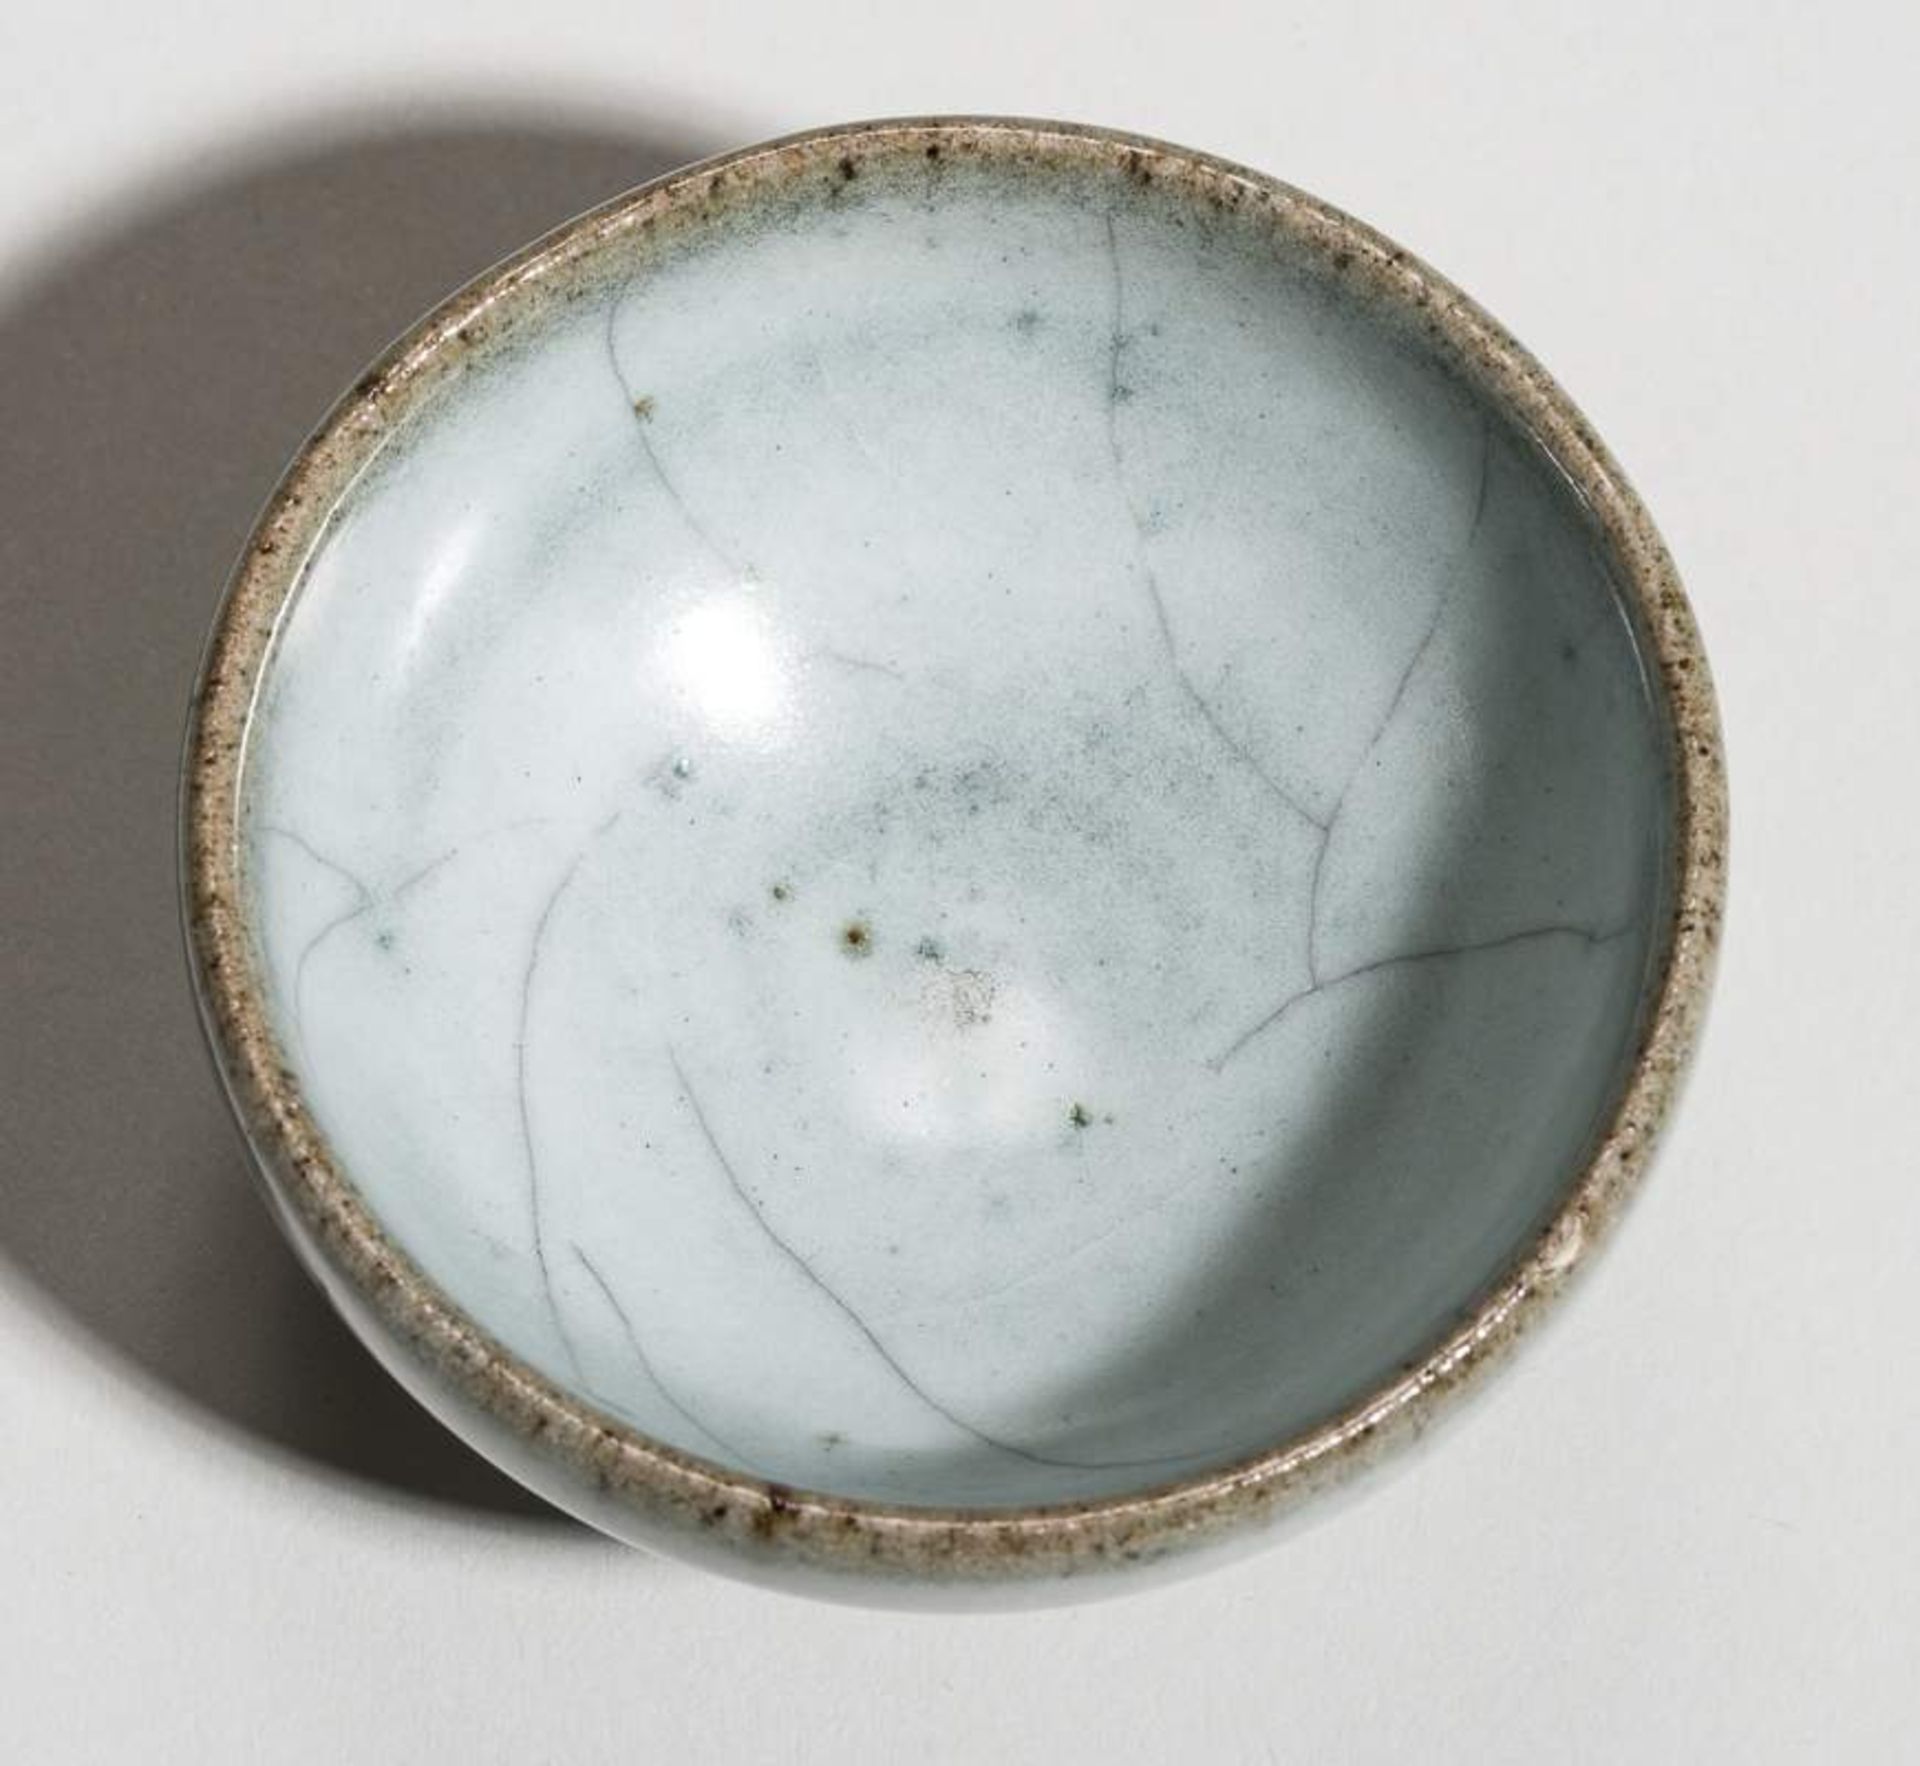 KLEINE SCHALE
Glasierte Keramik. China, Yuan-Dynastie, ca. 13. bis 14. Jh.Schöner graugrüne - Image 5 of 5